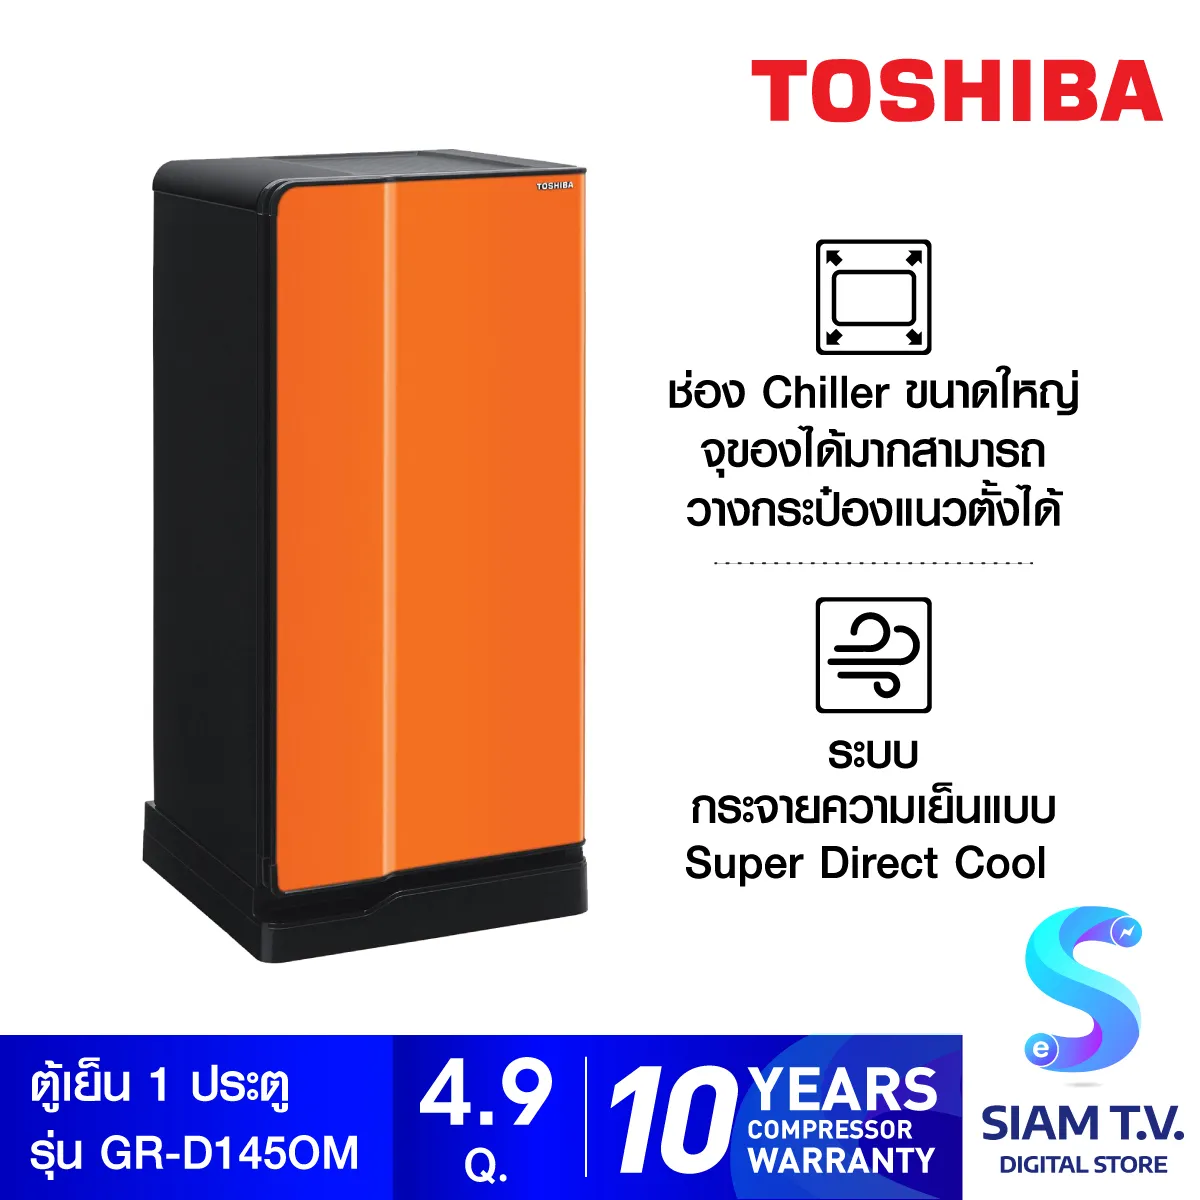 TOSHIBA ตู้เย็น 1 ประตู ความจุ 4.9 คิว รุ่น Curve GR-D145 โดย สยามทีวี by Siam T.V.